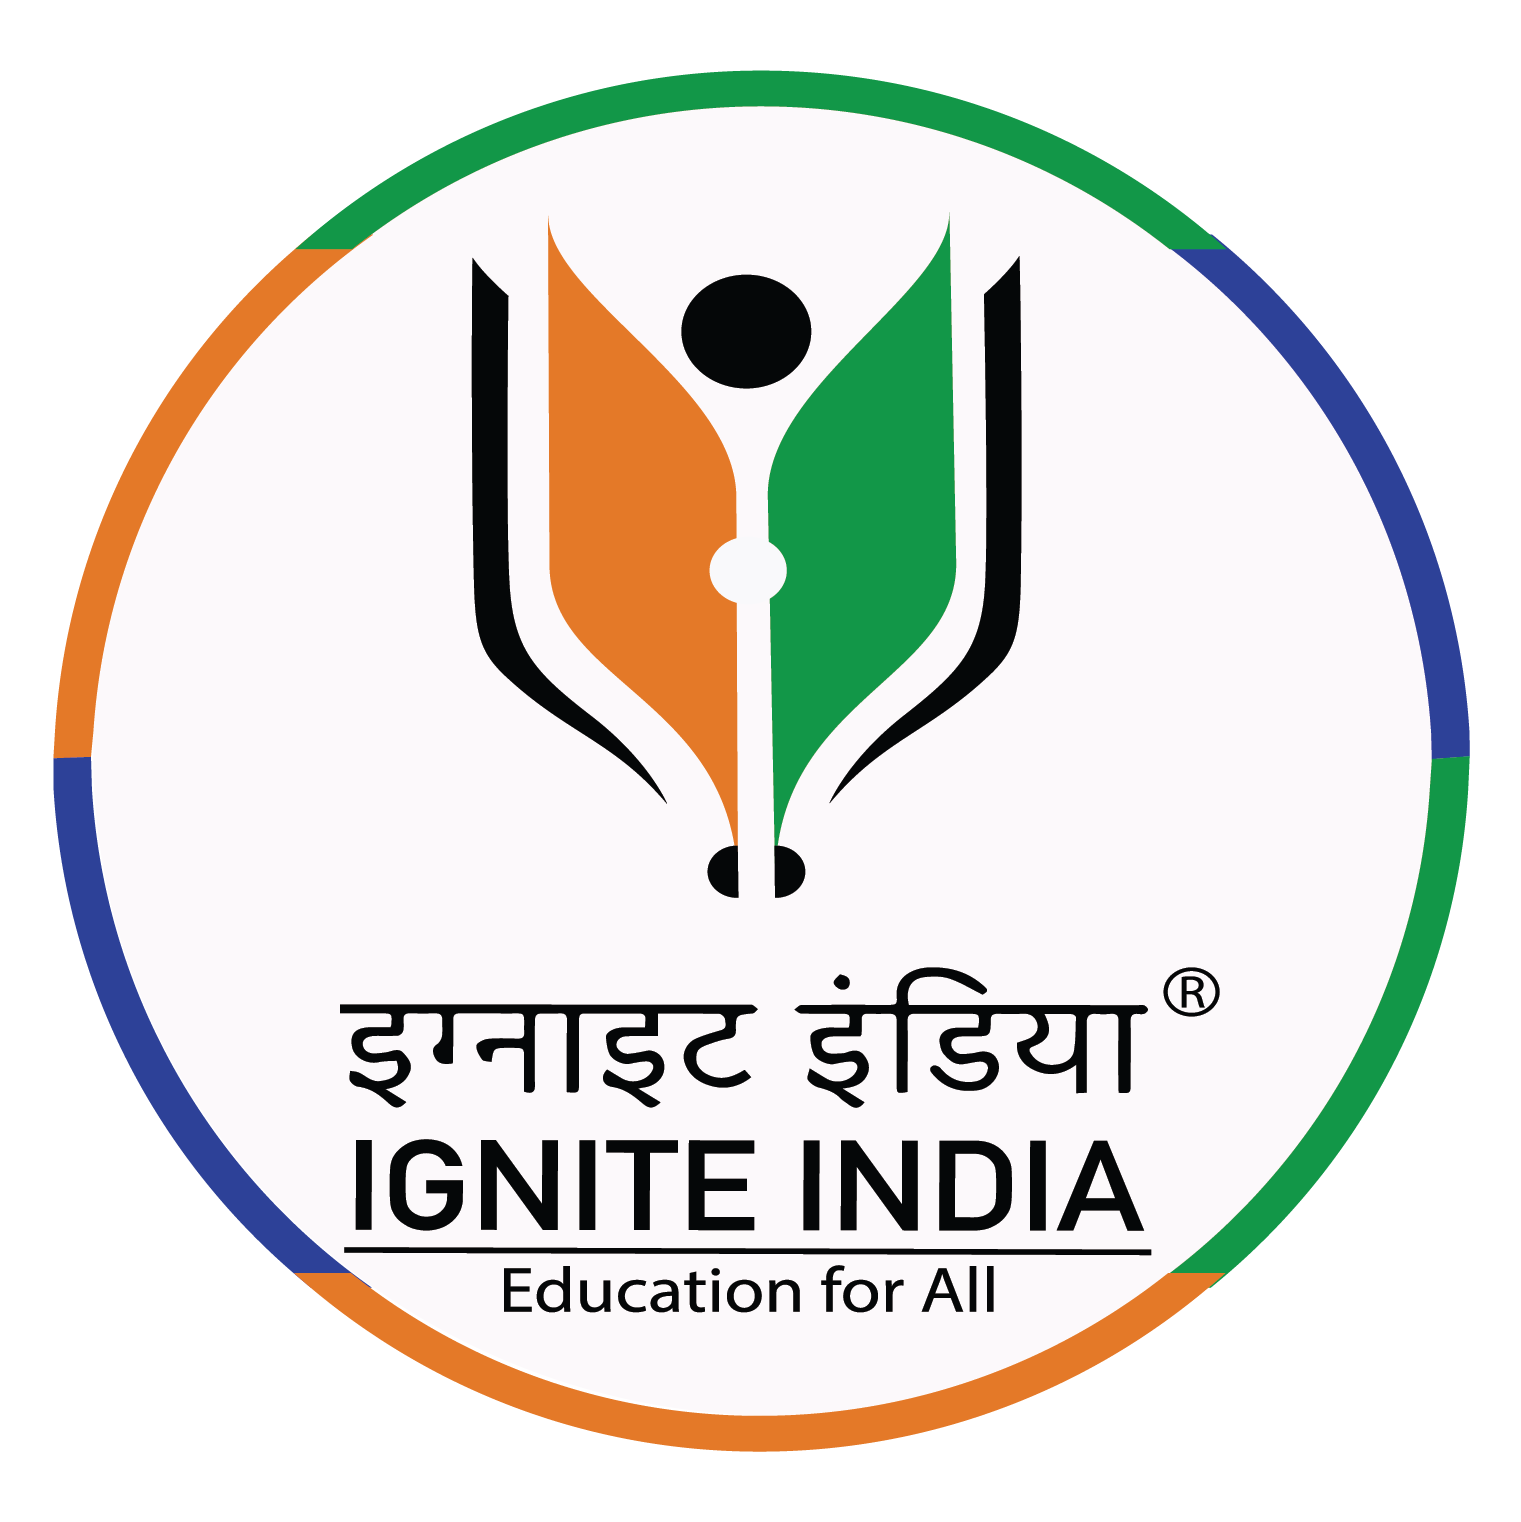 Ignite India